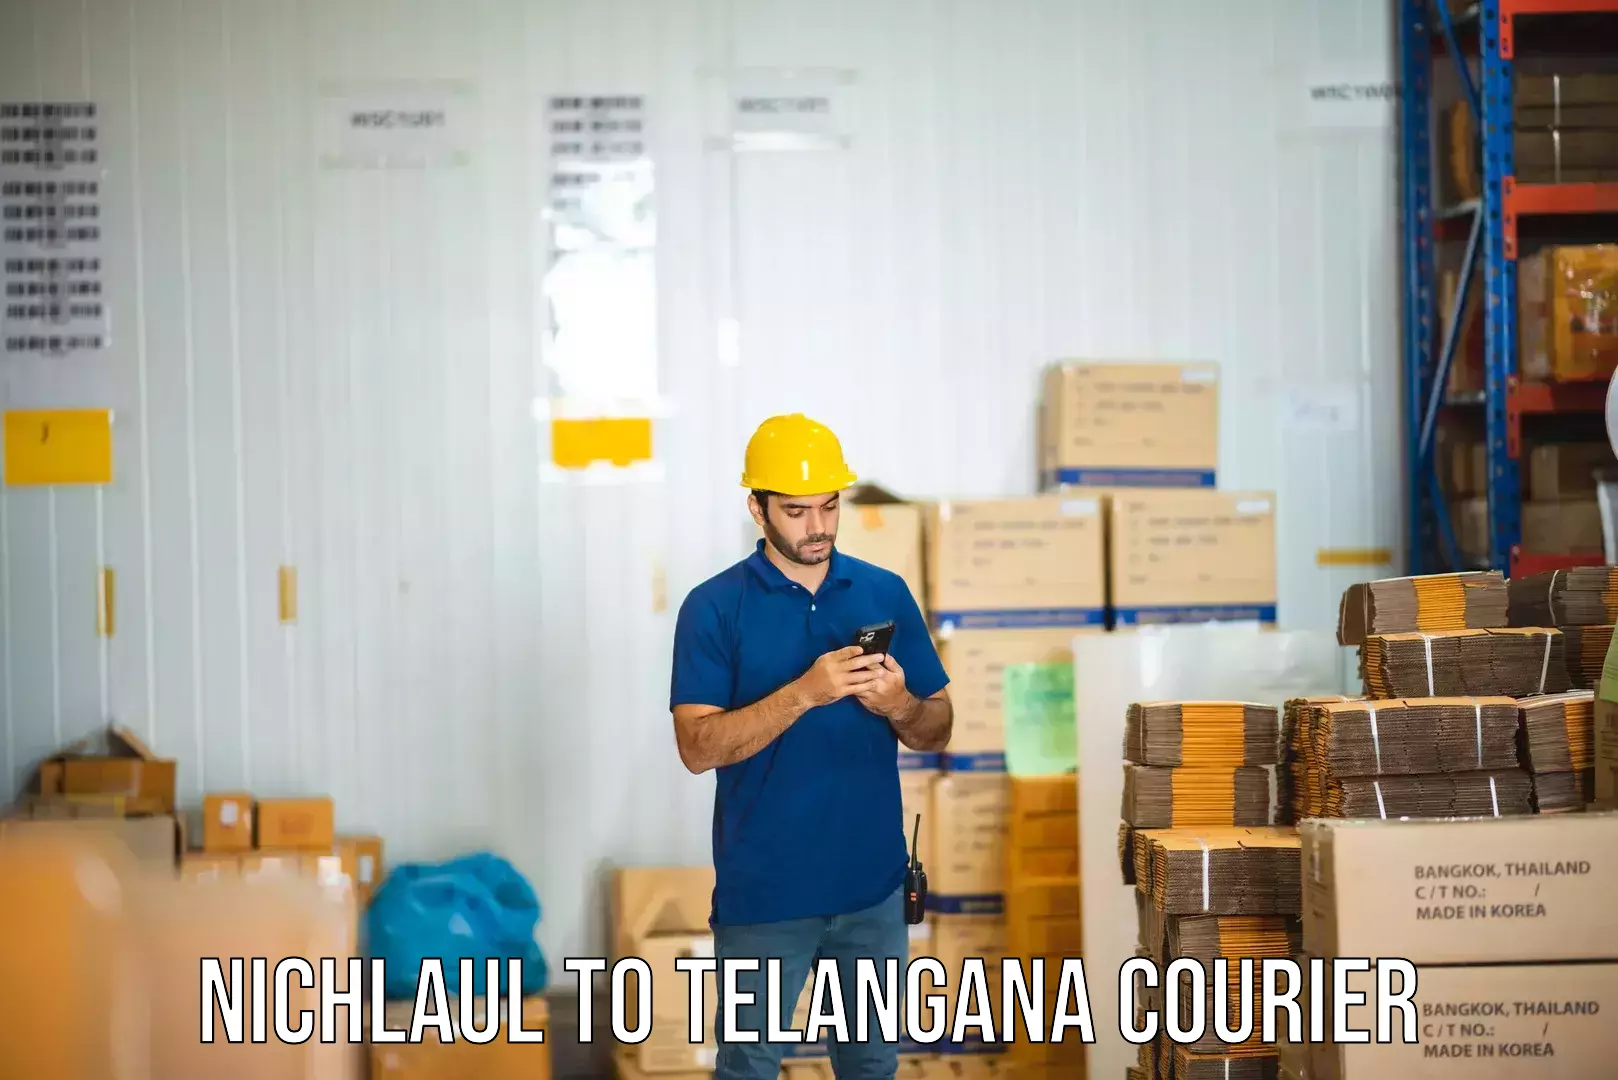 Cost-effective courier options Nichlaul to Veenavanka